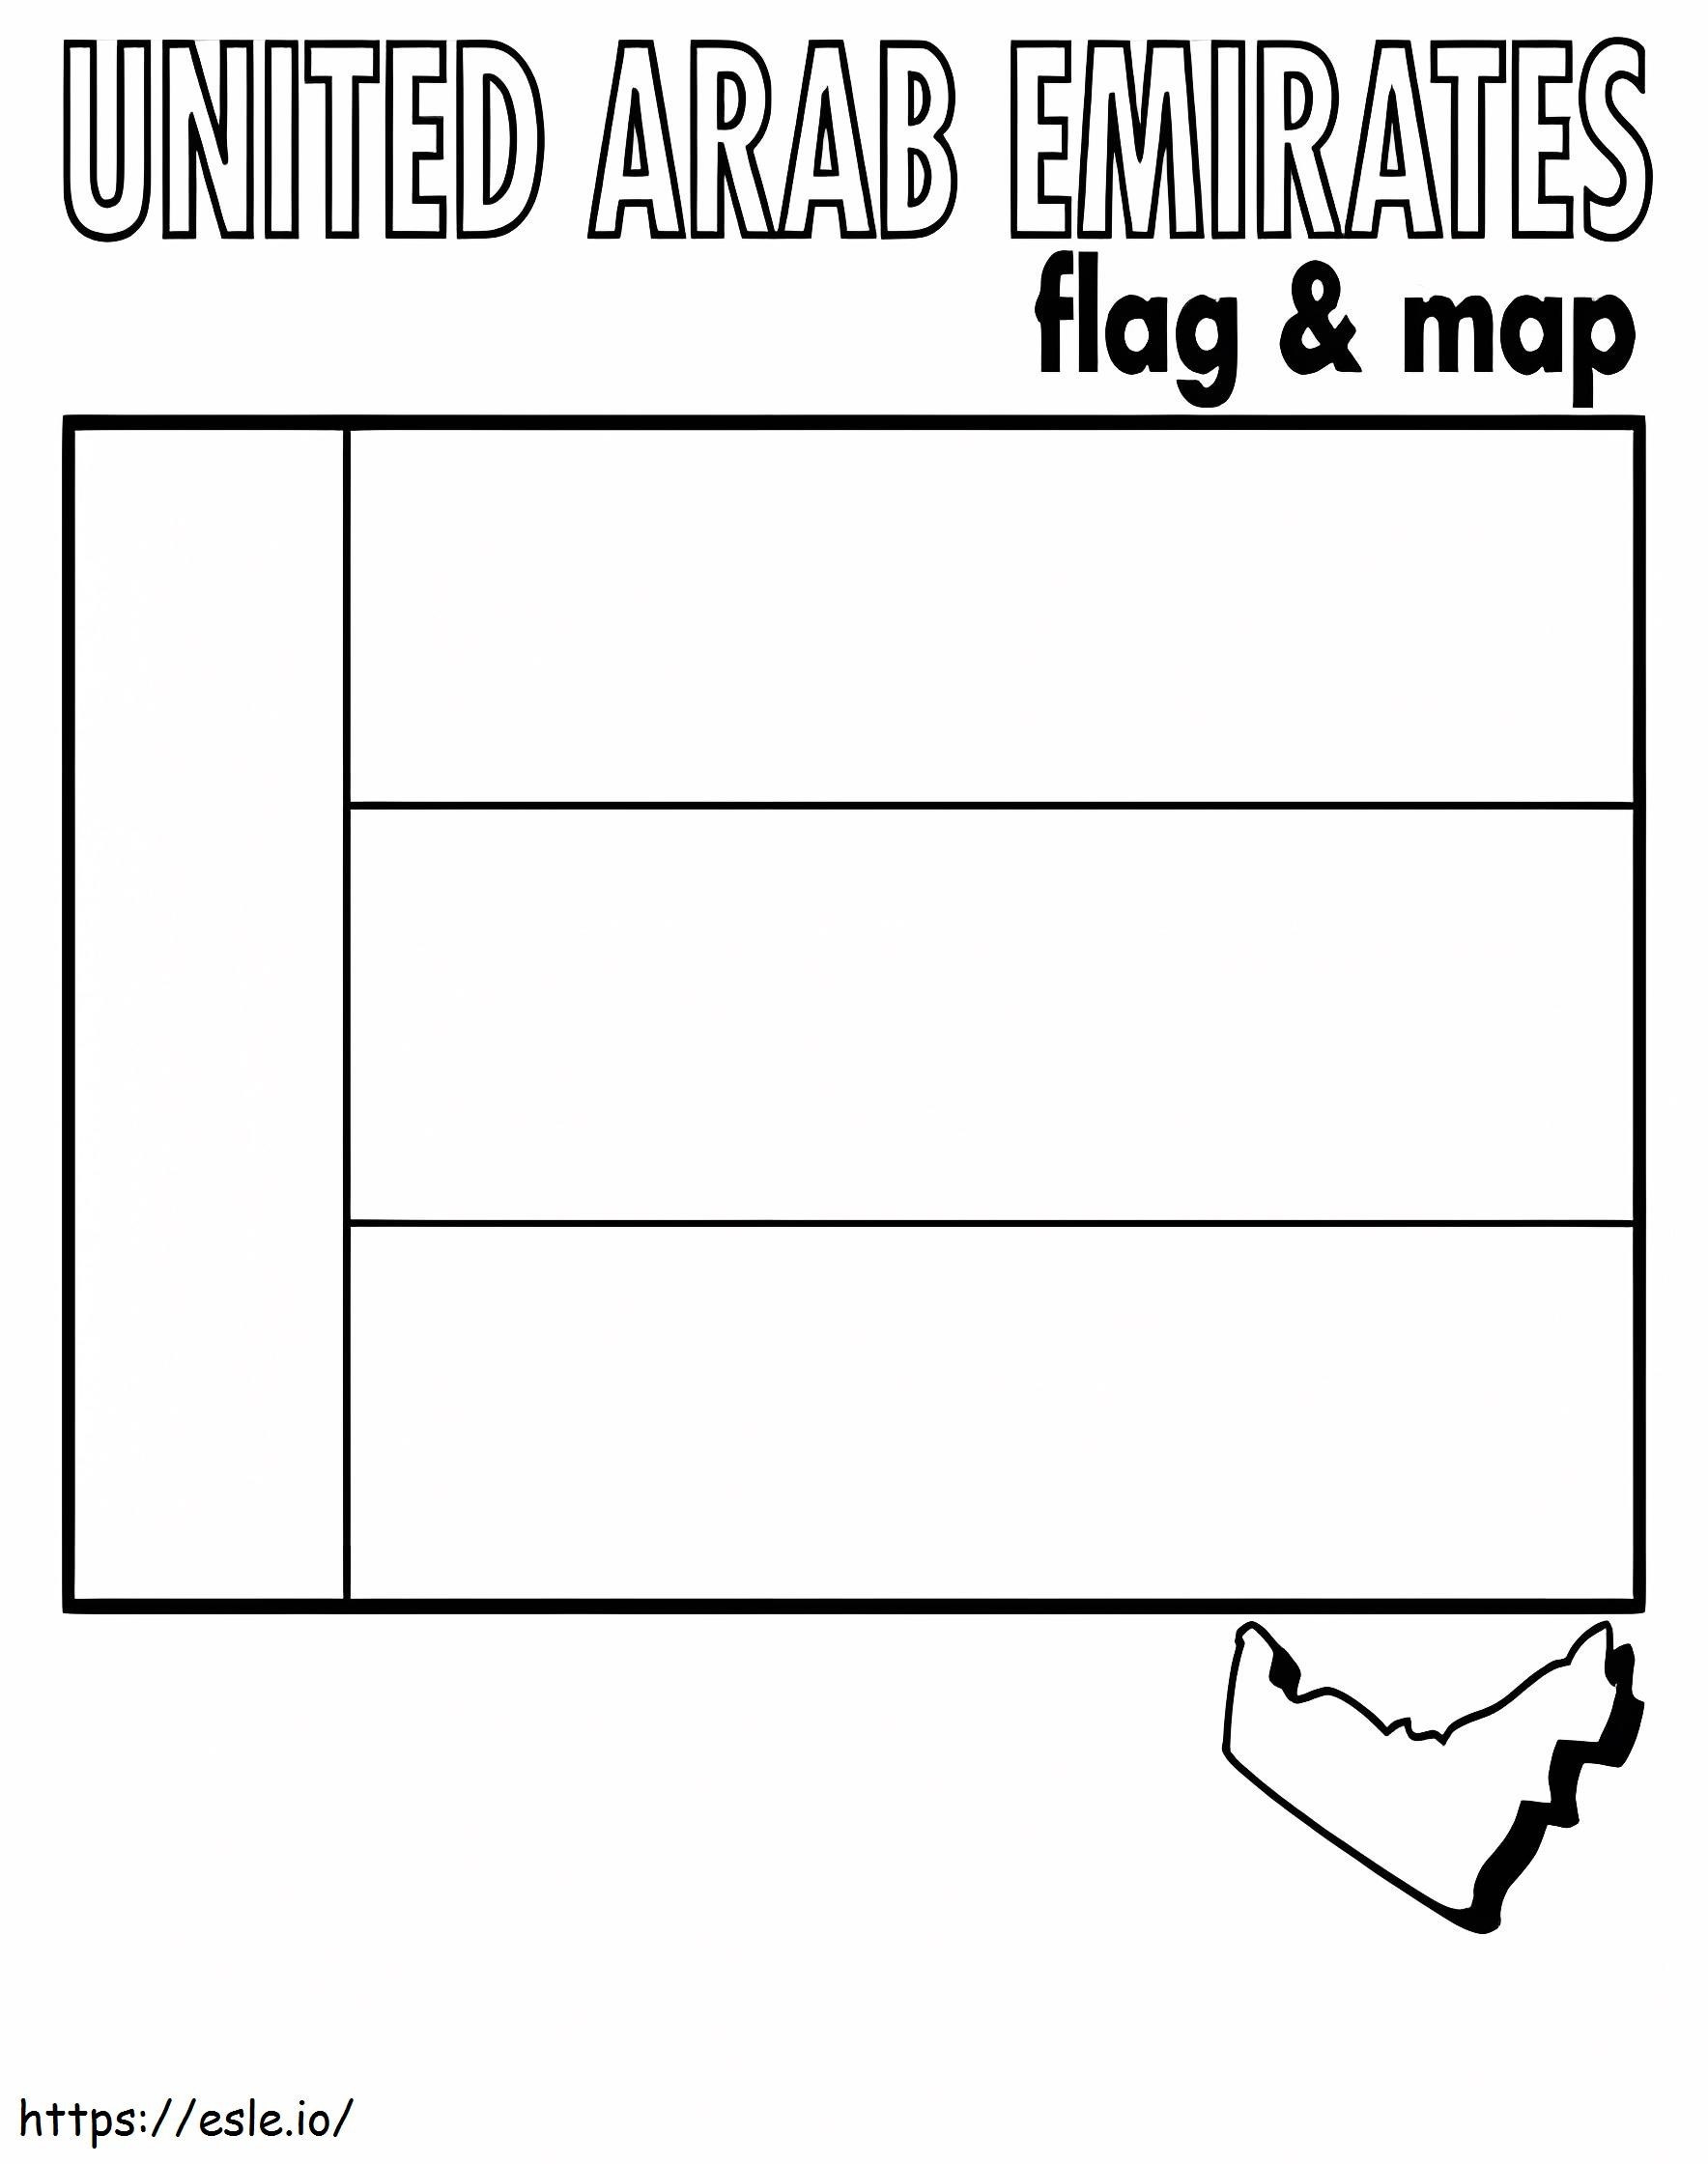 Flaga i mapa Zjednoczonych Emiratów Arabskich kolorowanka